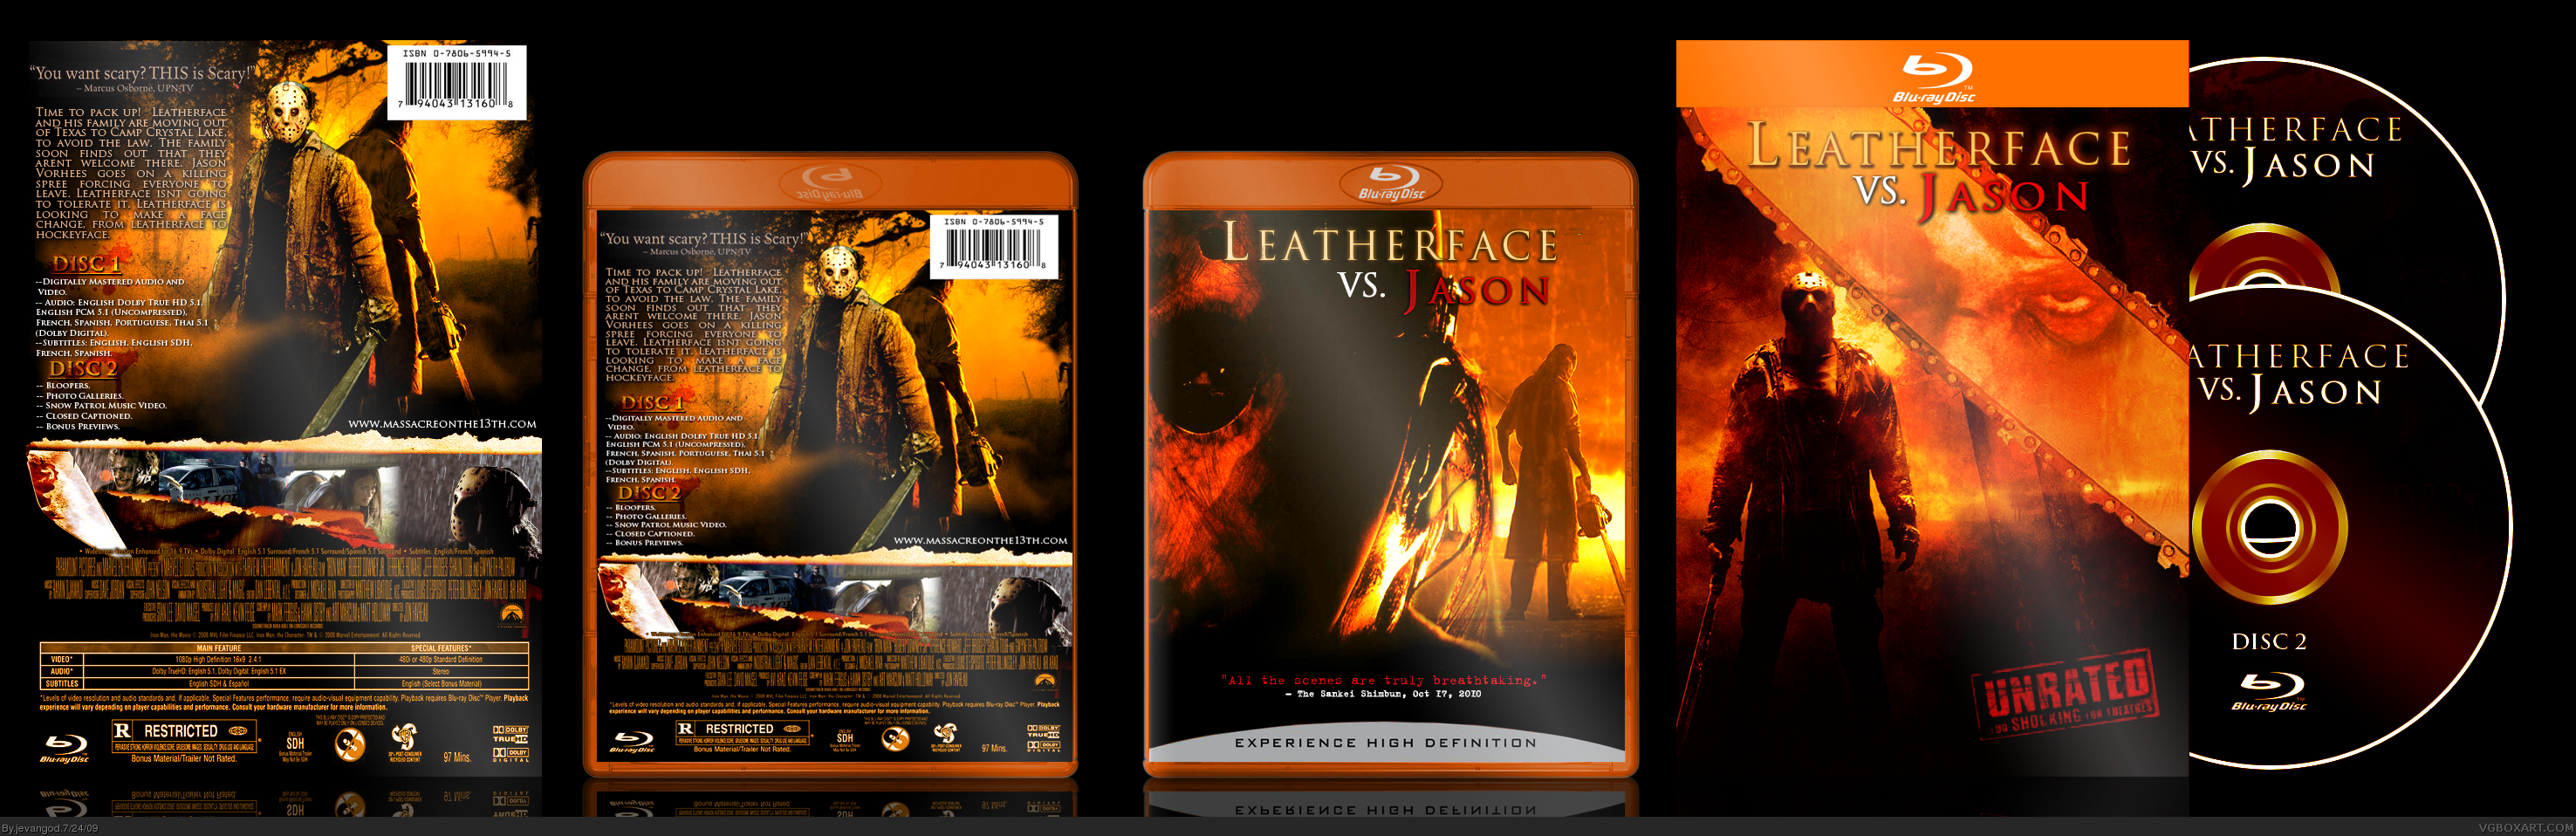 Leatherface vs. Jason box cover